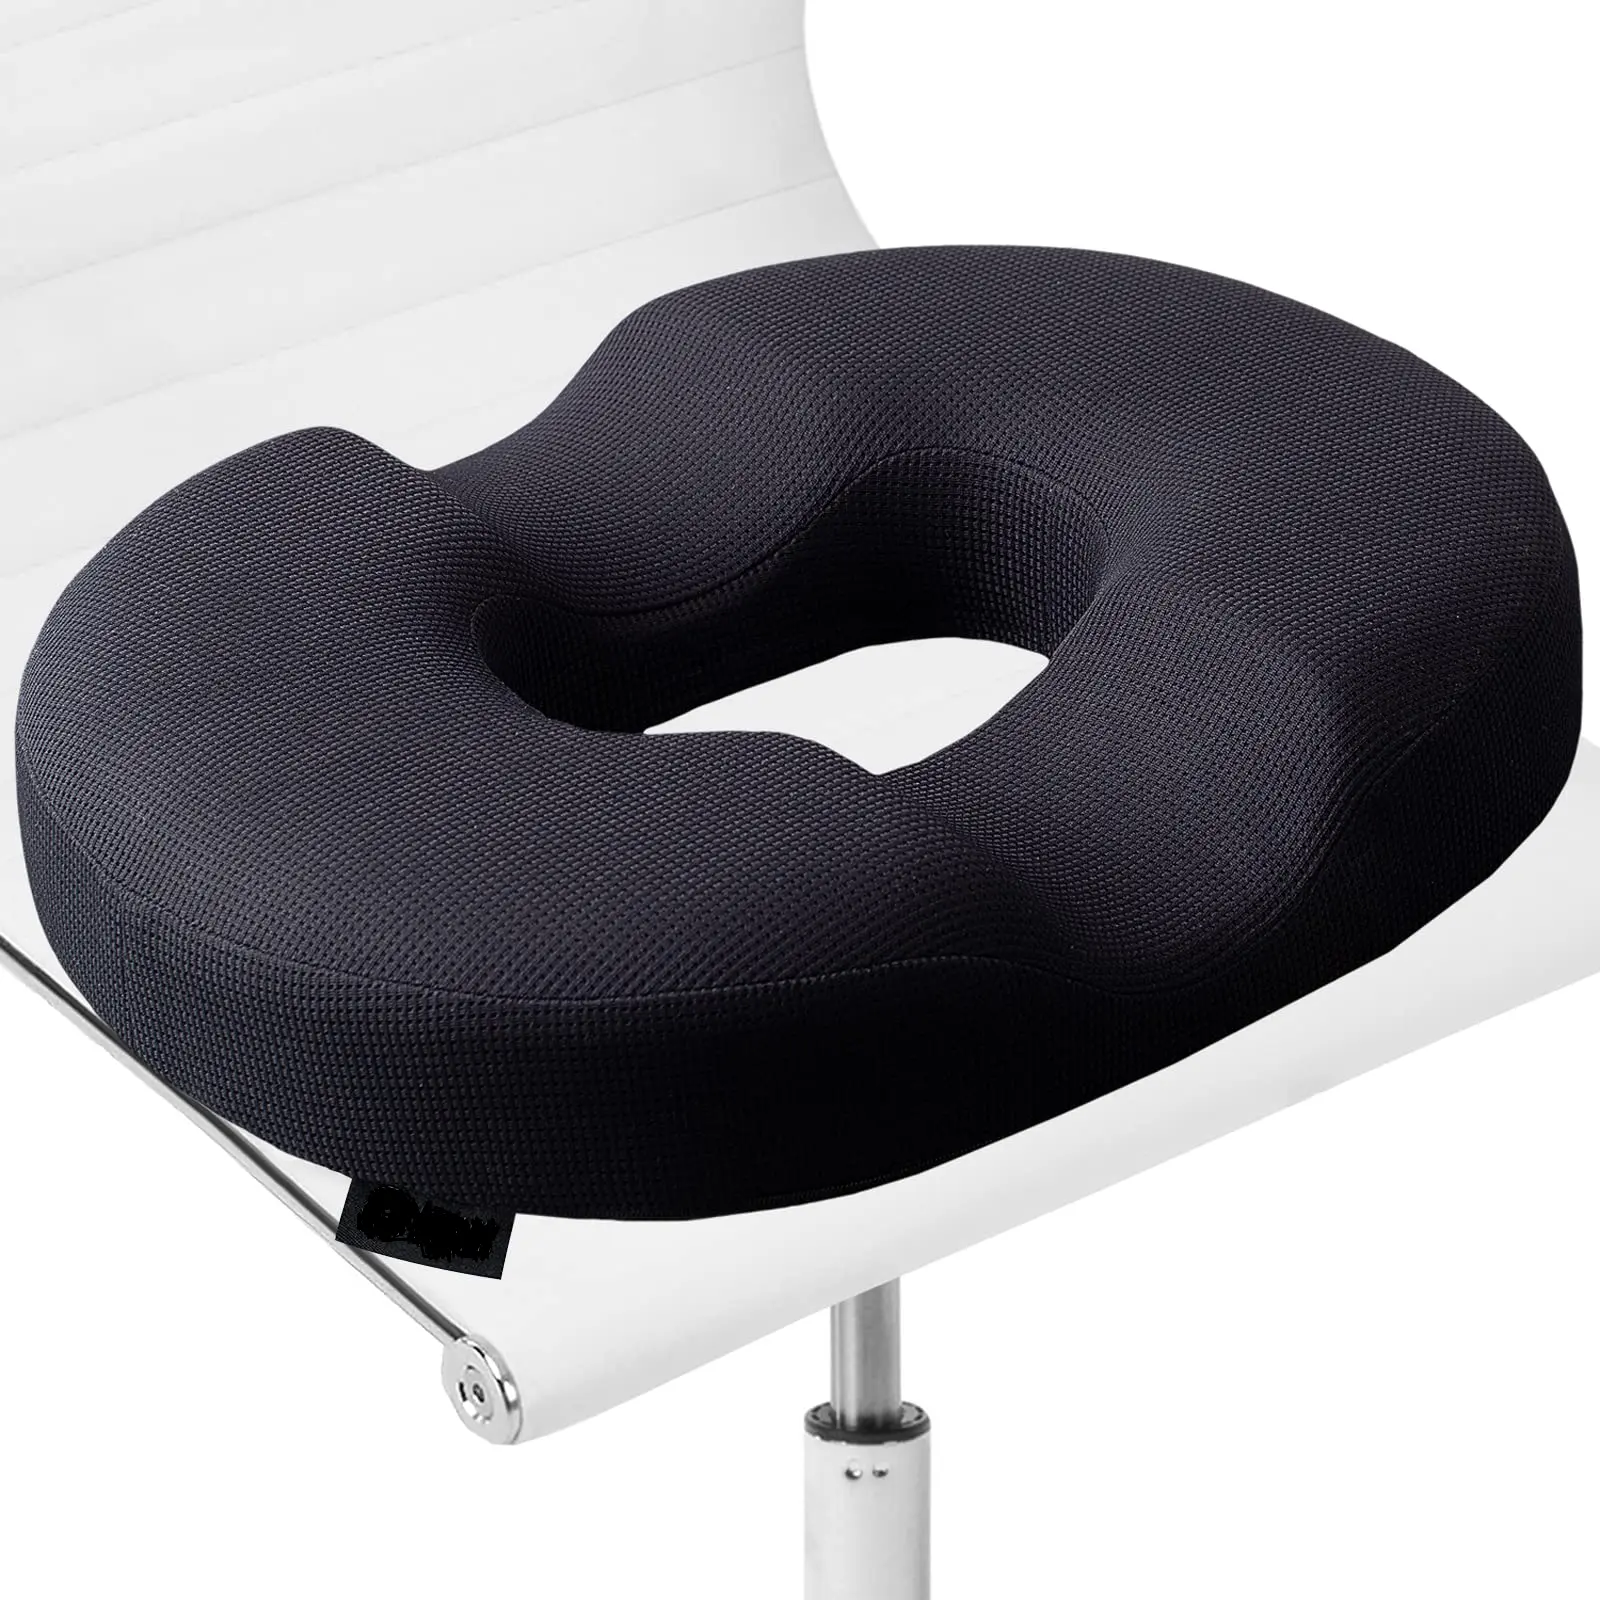 Almofada de espuma de memória para cadeira com tampa lavável, para alívio e conforto